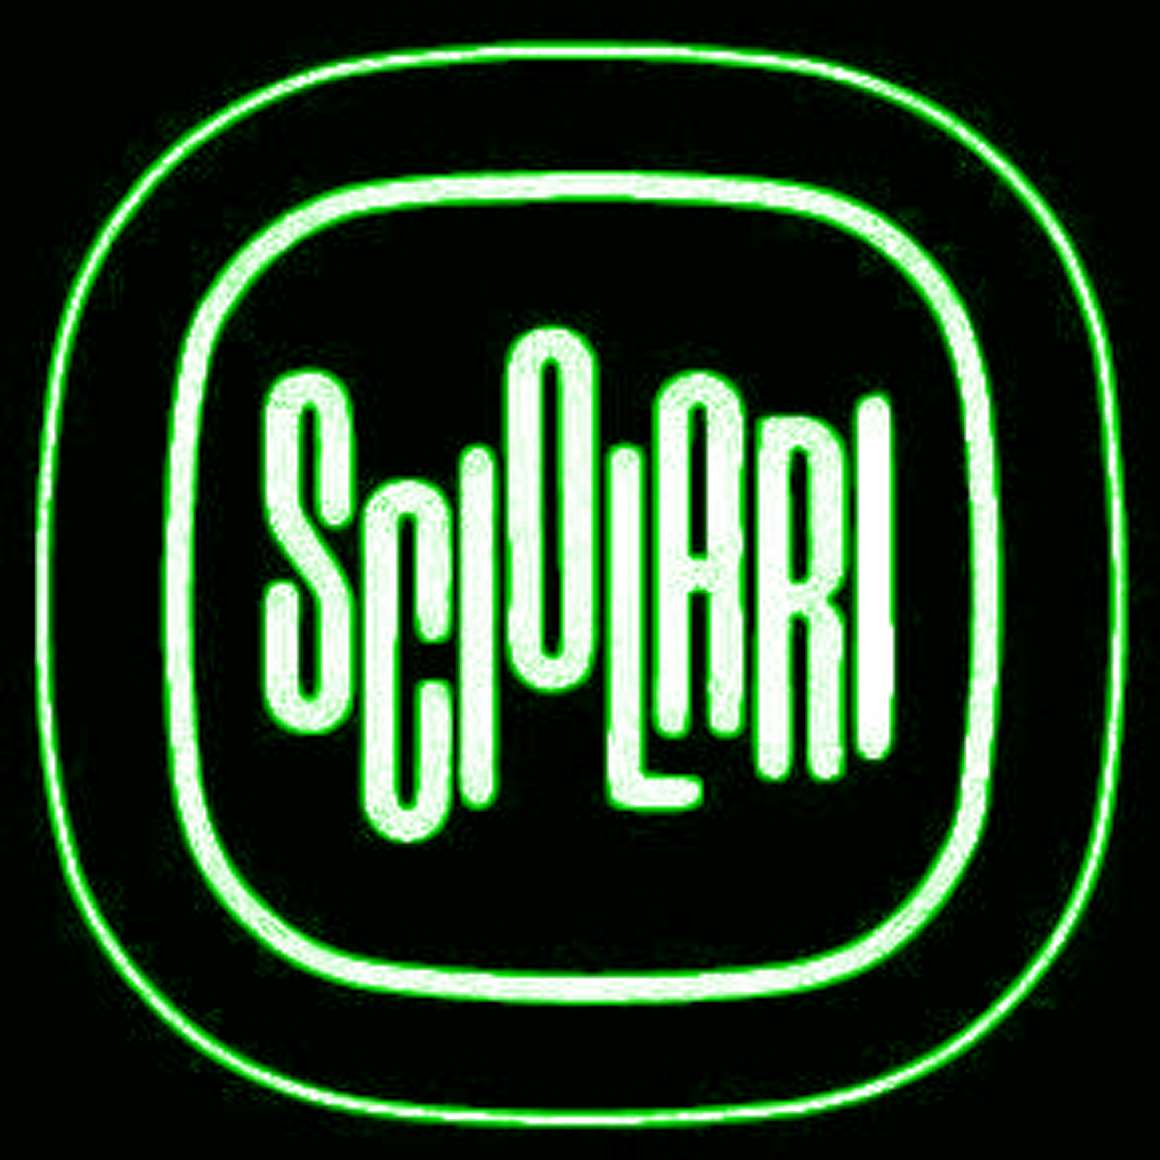 Sciolari logo